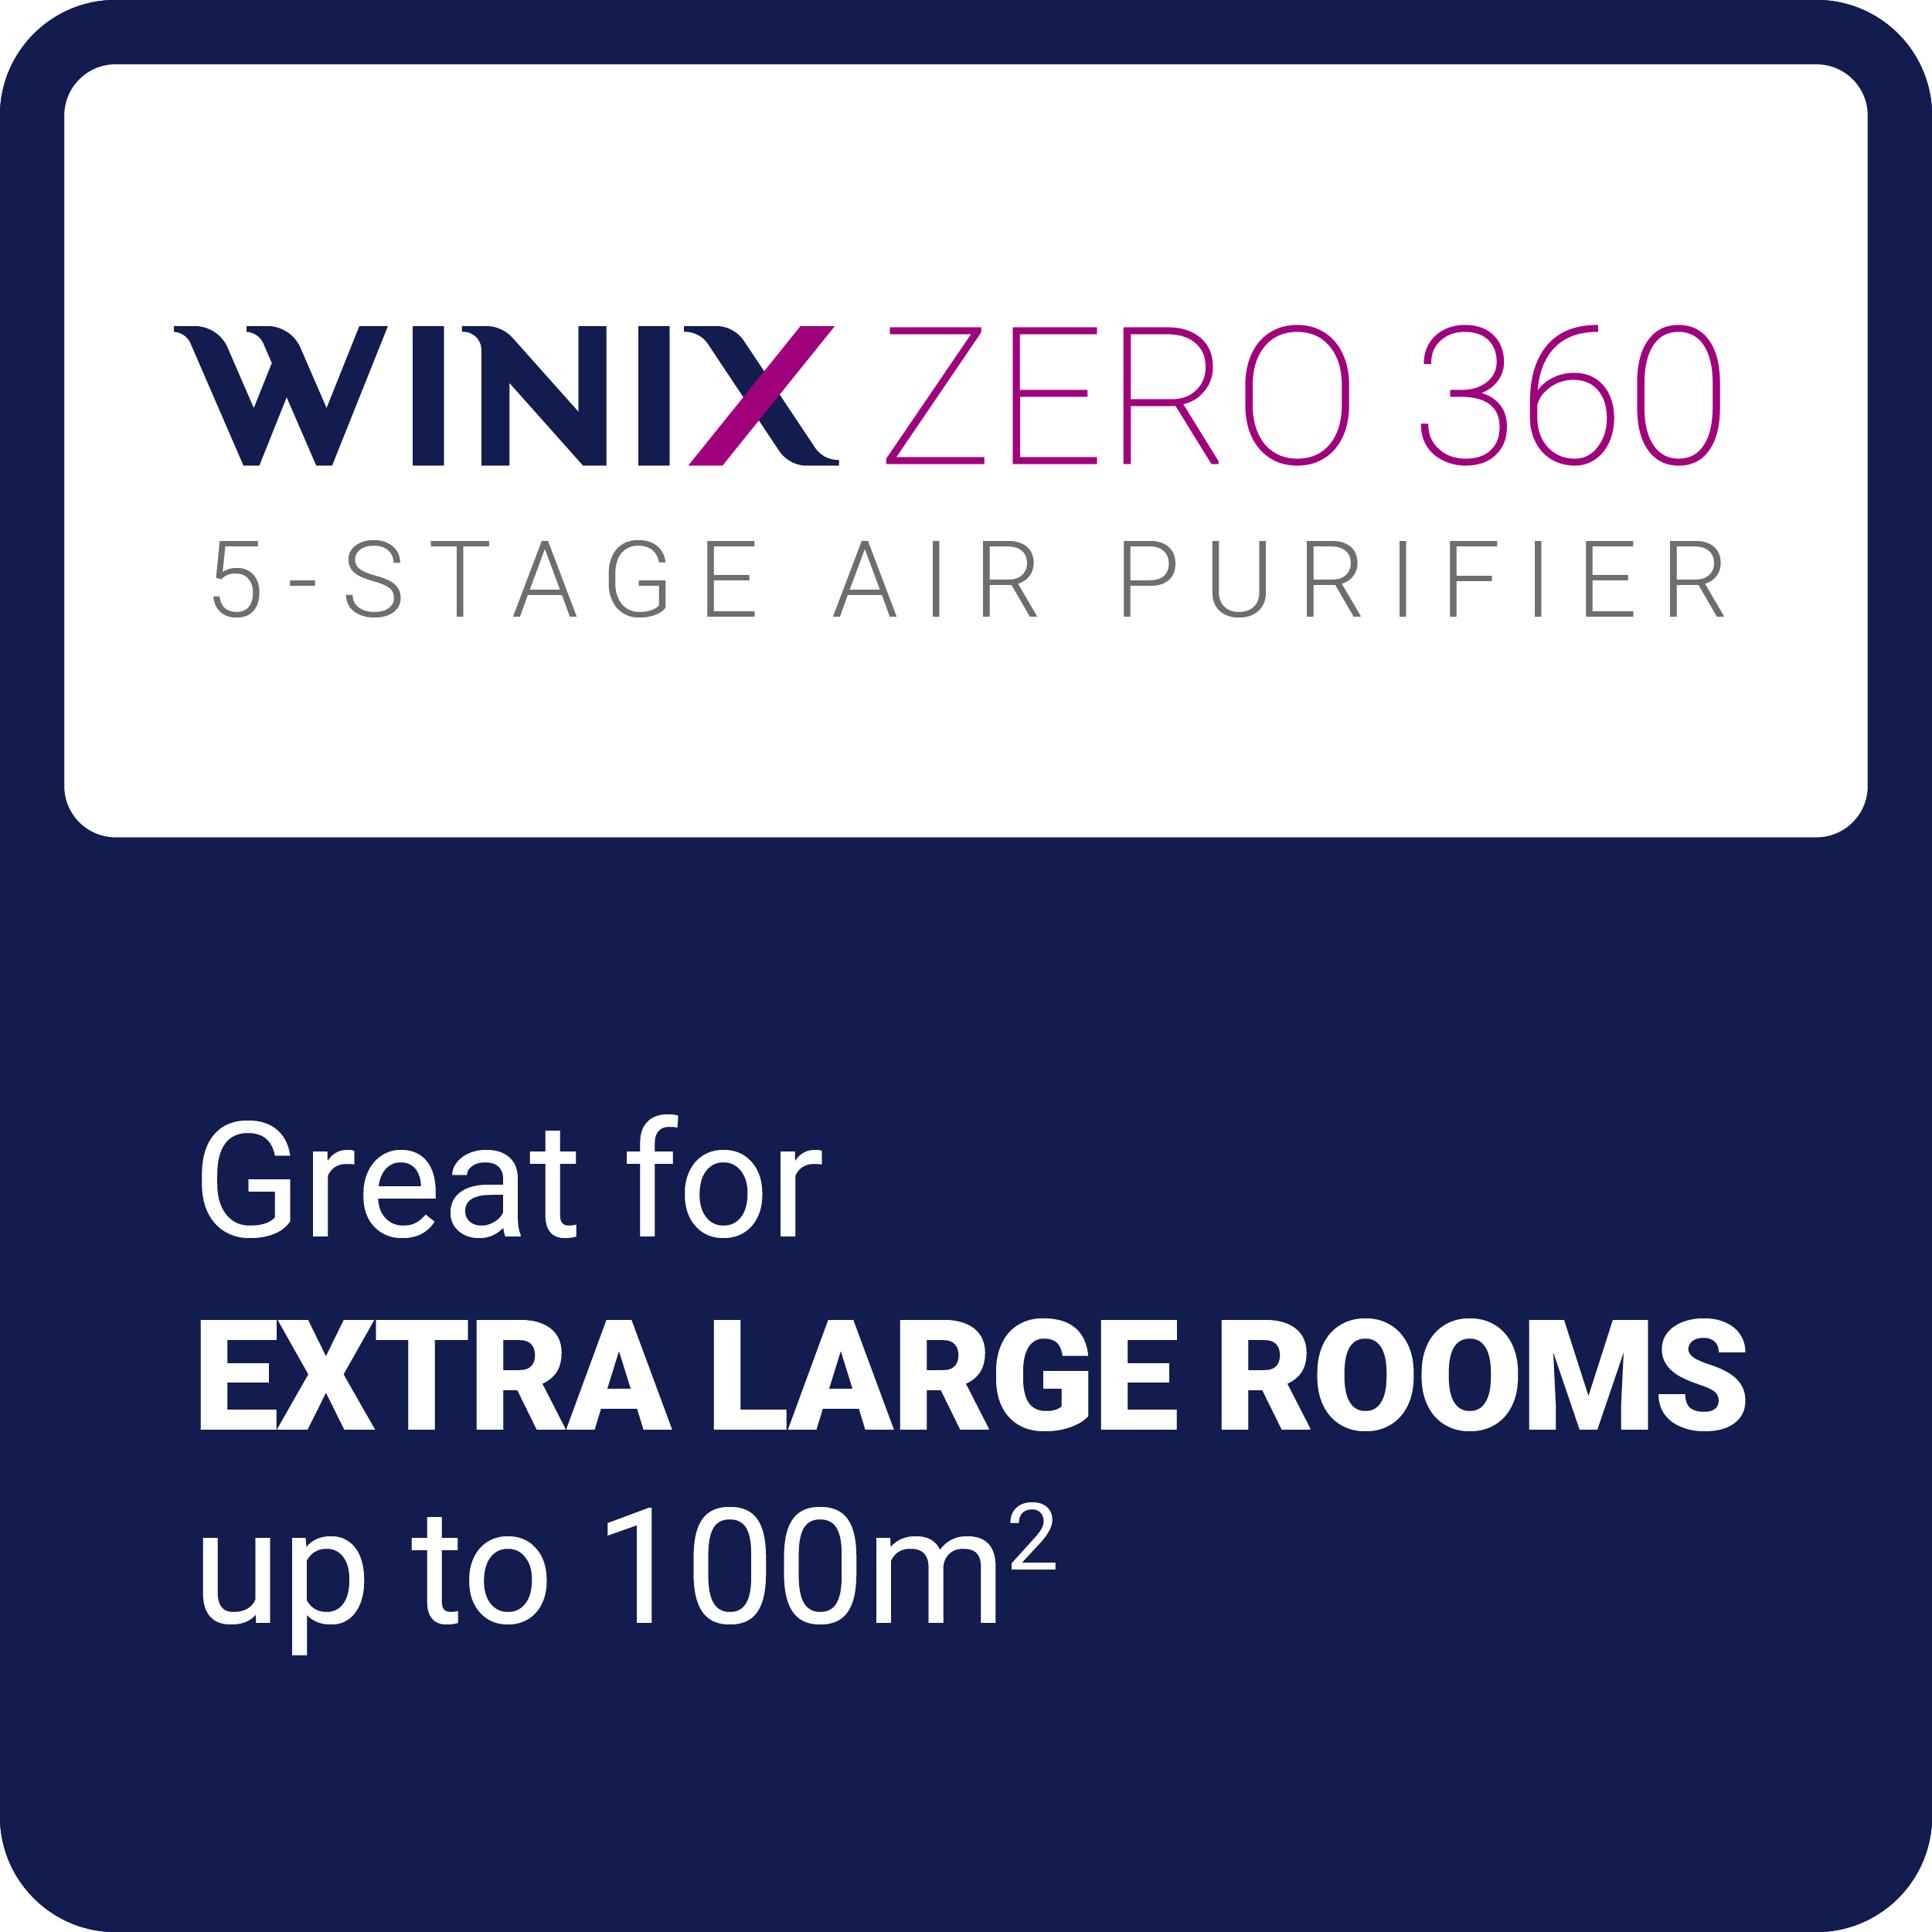 WINIX ZERO+ 360 5-STAGE AIR PURIFIER